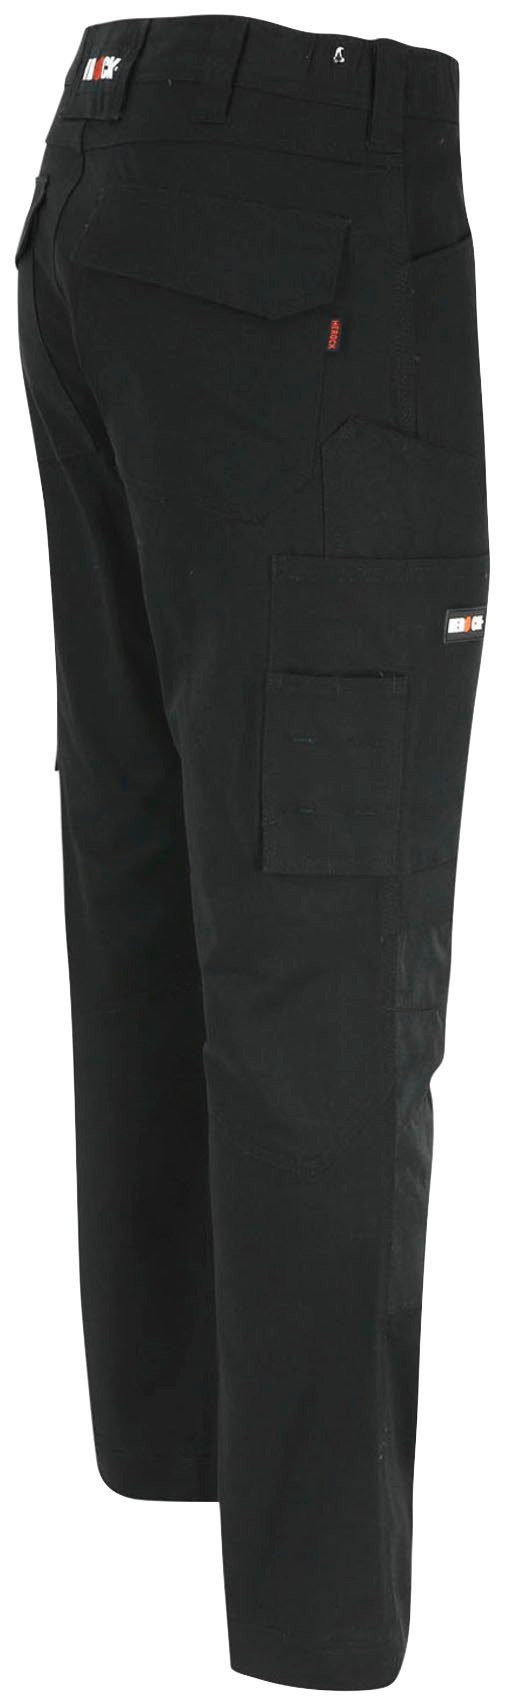 Herock Arbeitshose DERO Slim 2-Wege-Stretch, Fit Passform, schwarz wasserabweisend Multi-Pocket